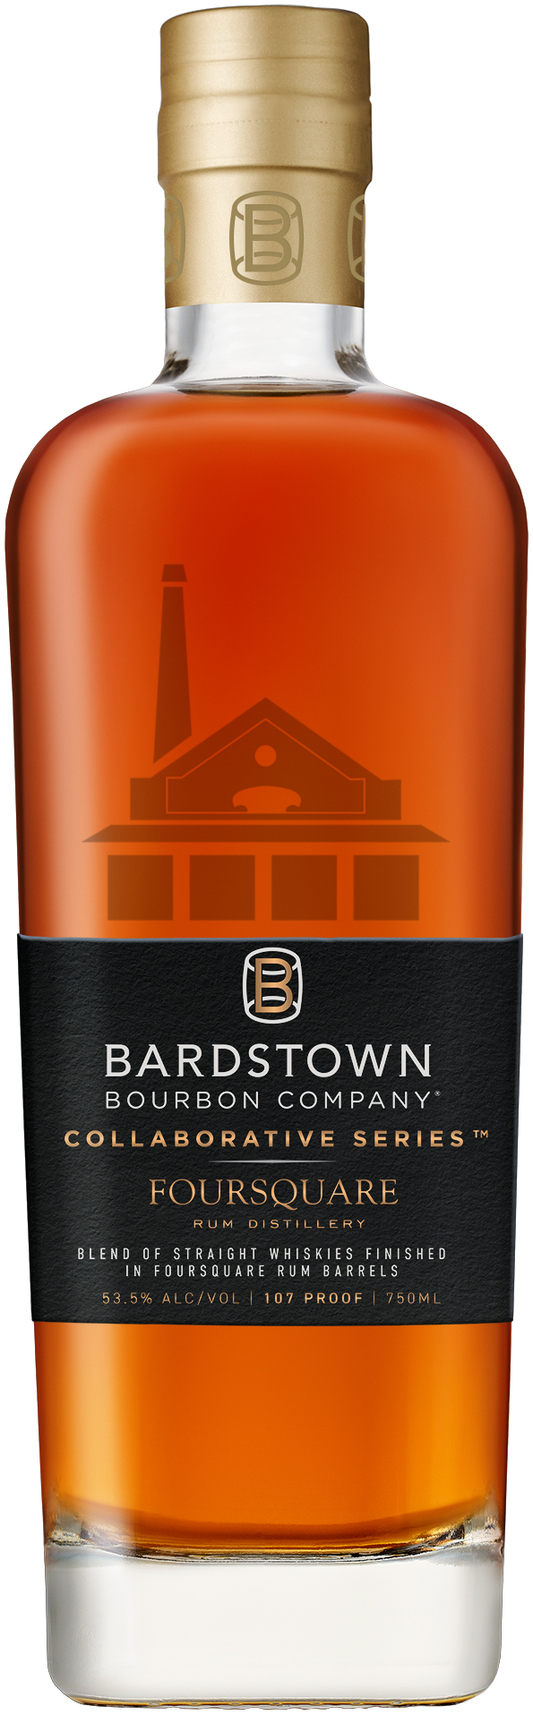 Bardstown Bourbon Co Collaborative Series Foursquare Blended Malt Bourbon750ml